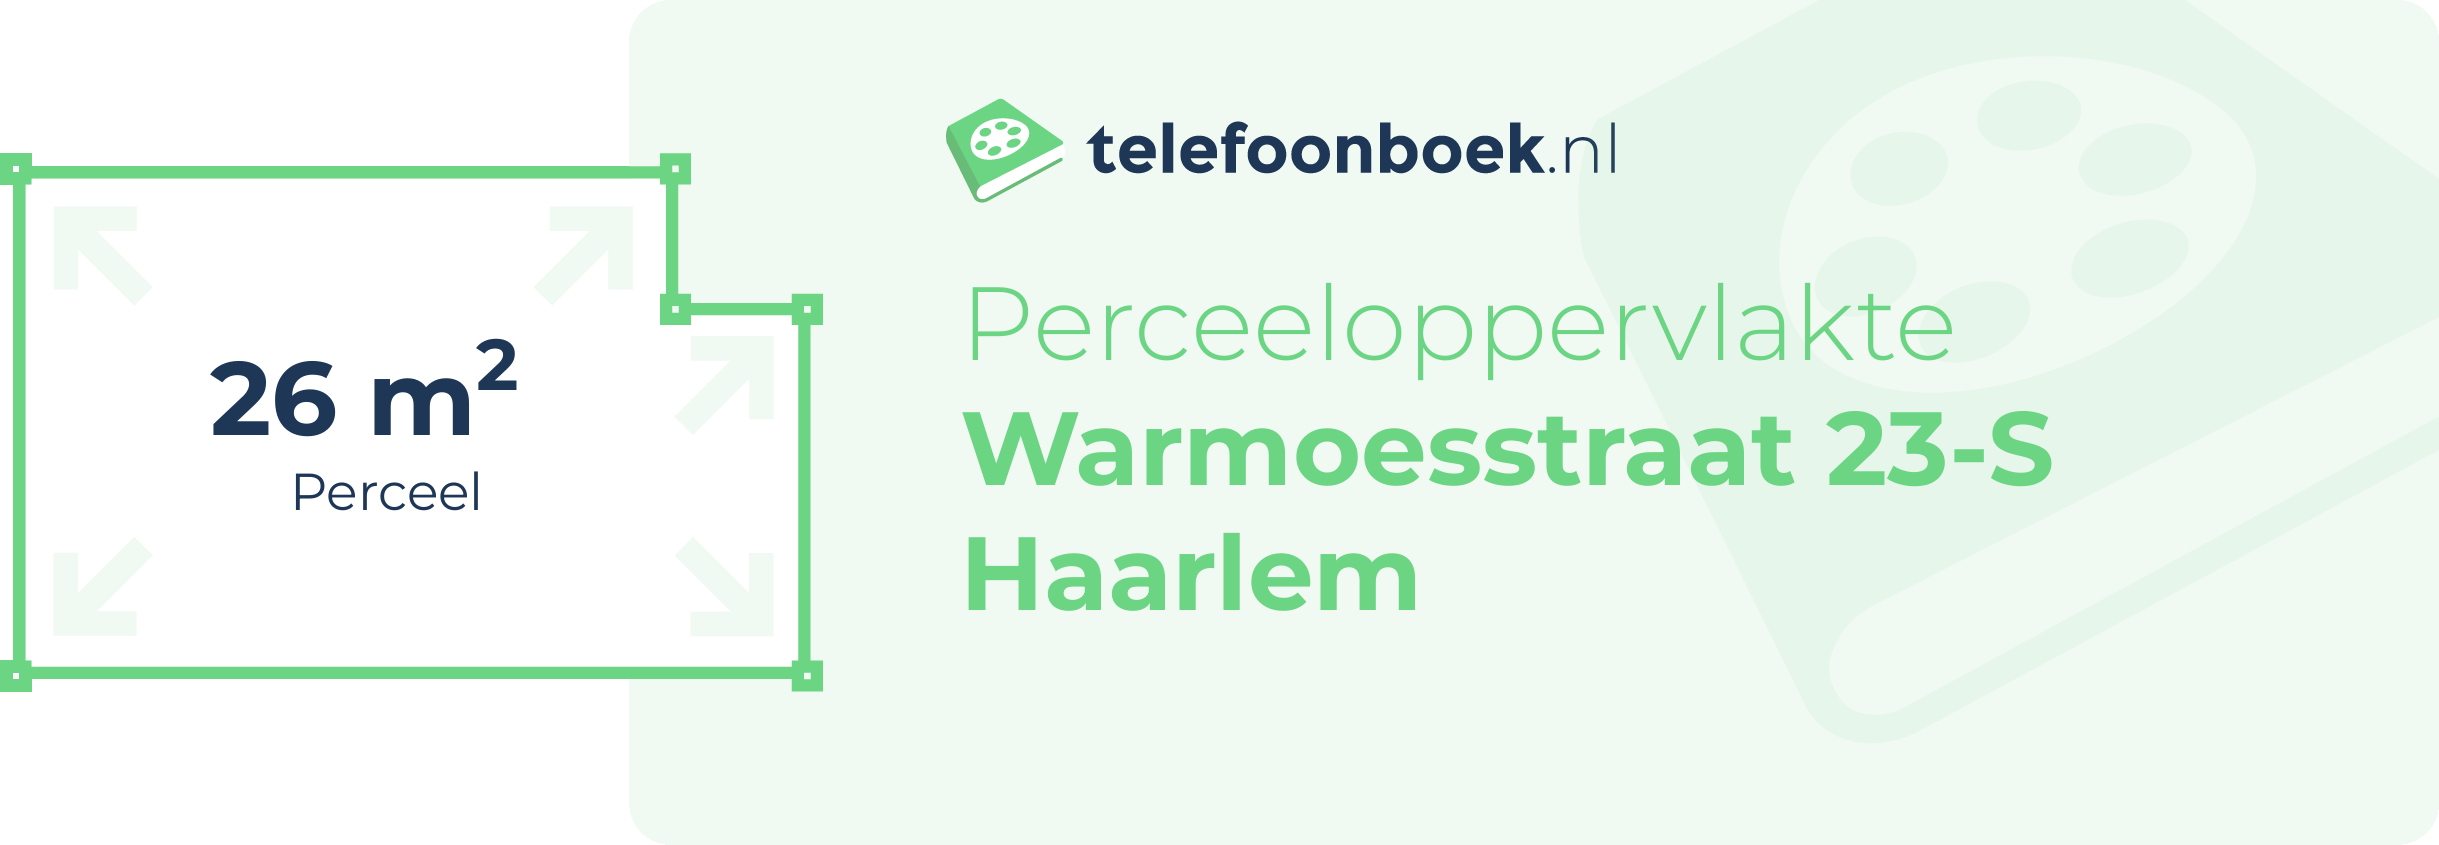 Perceeloppervlakte Warmoesstraat 23-S Haarlem